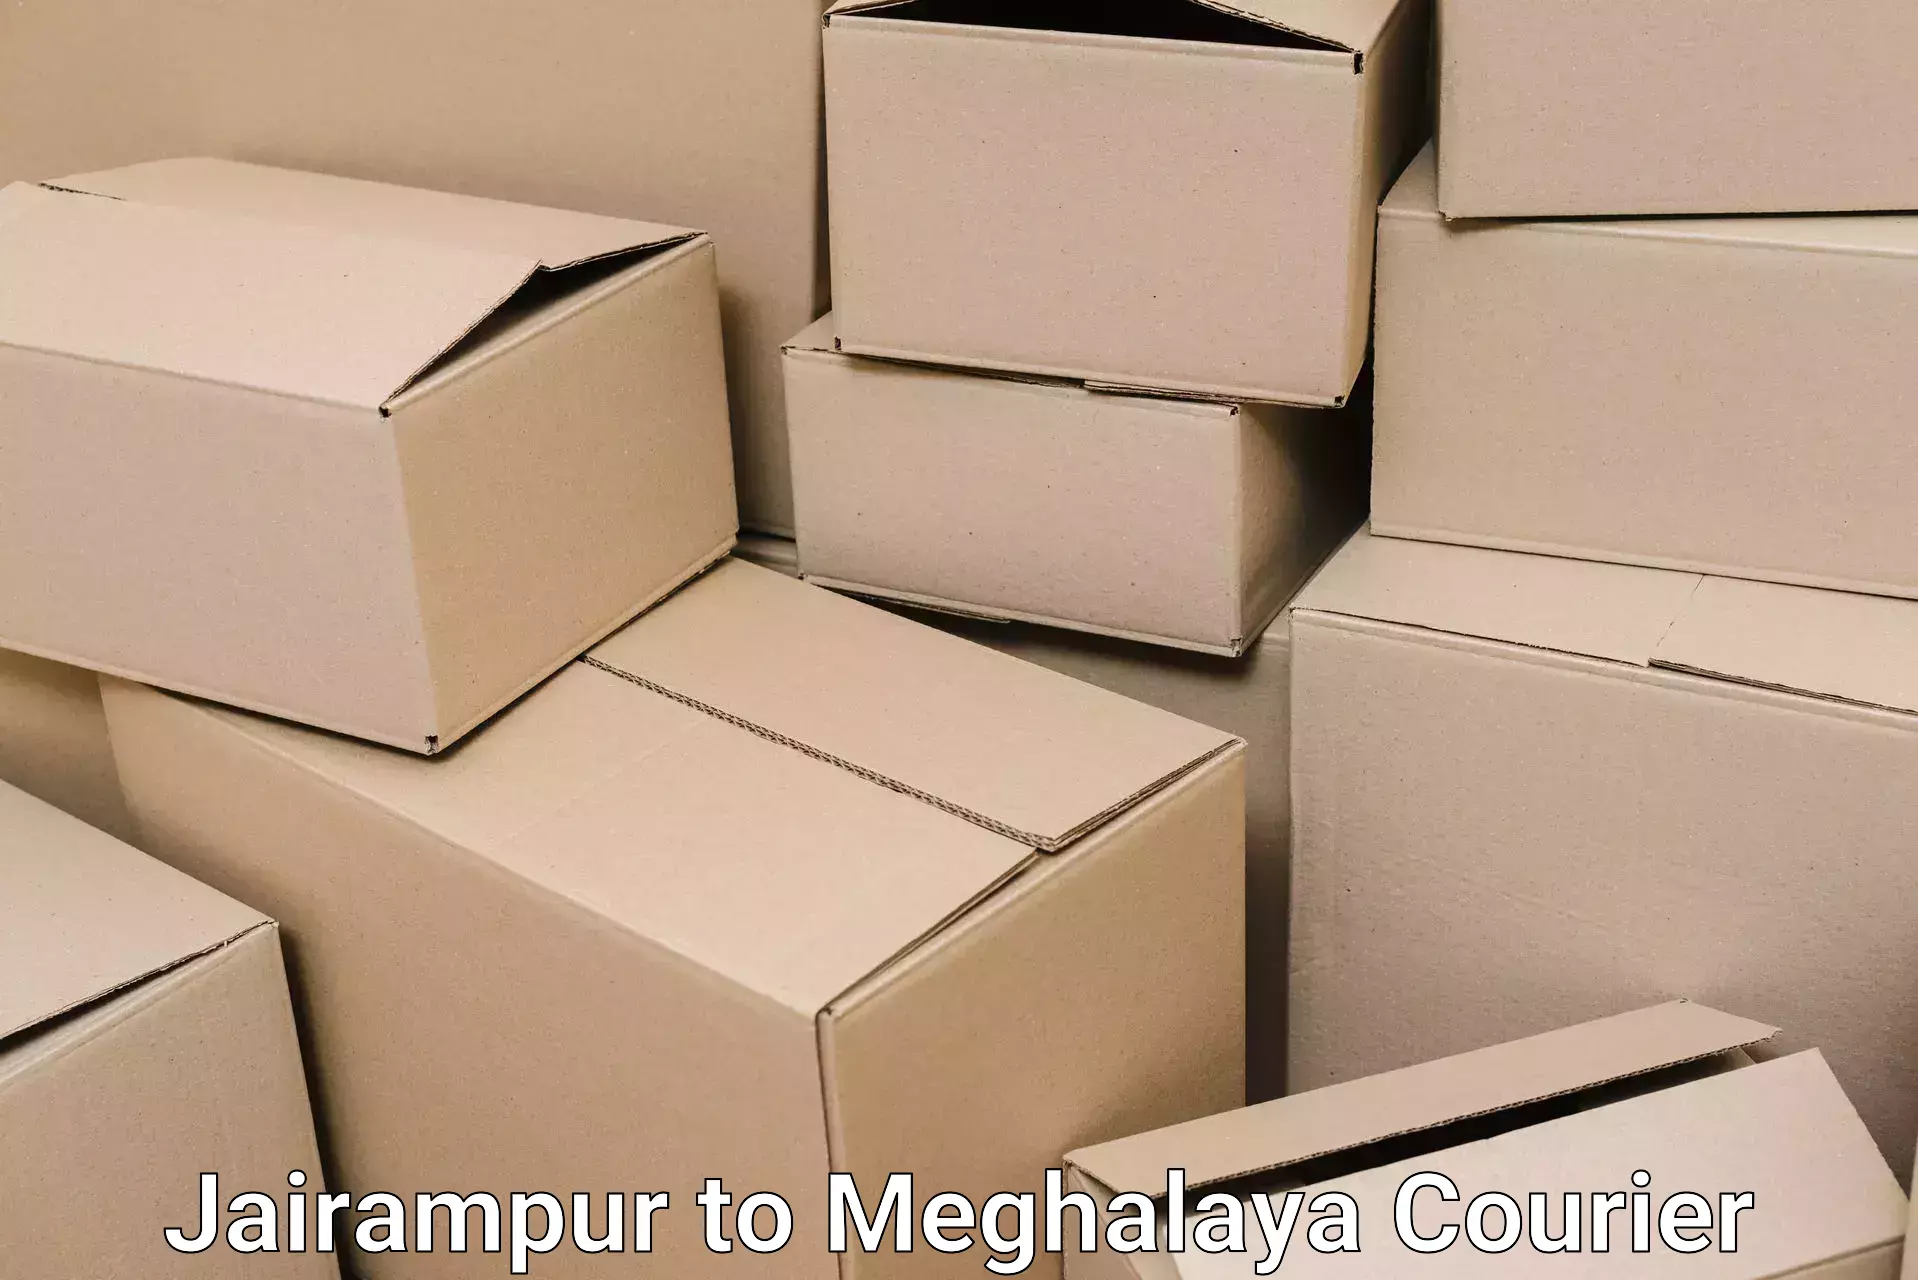 Furniture moving experts Jairampur to Nongpoh